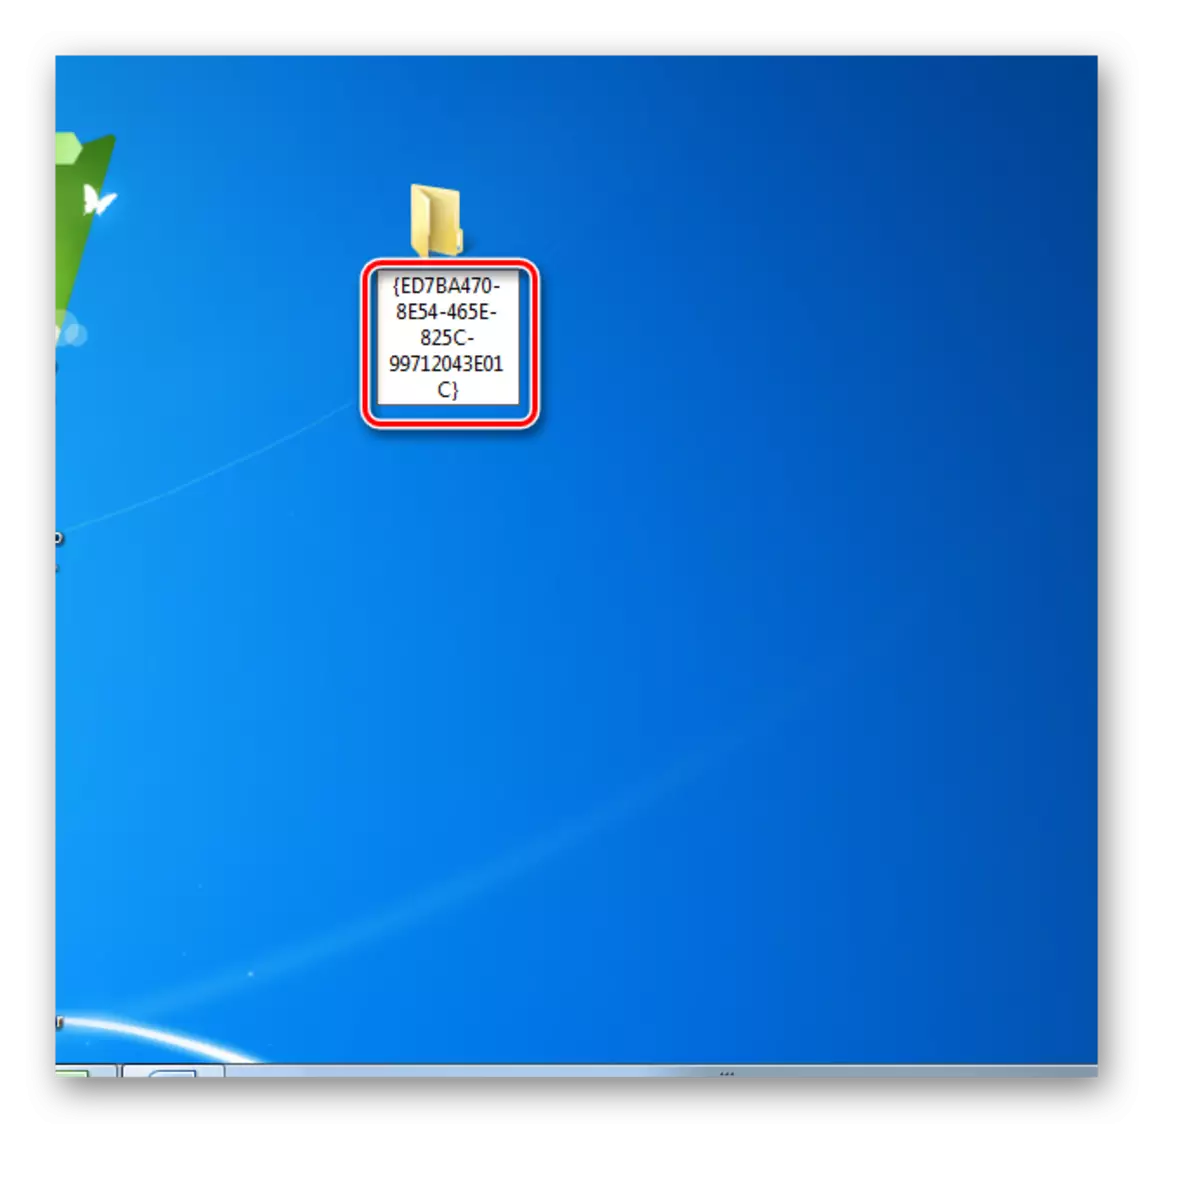 Windows 7 da ish stolida papkani nomini o'zgartiring